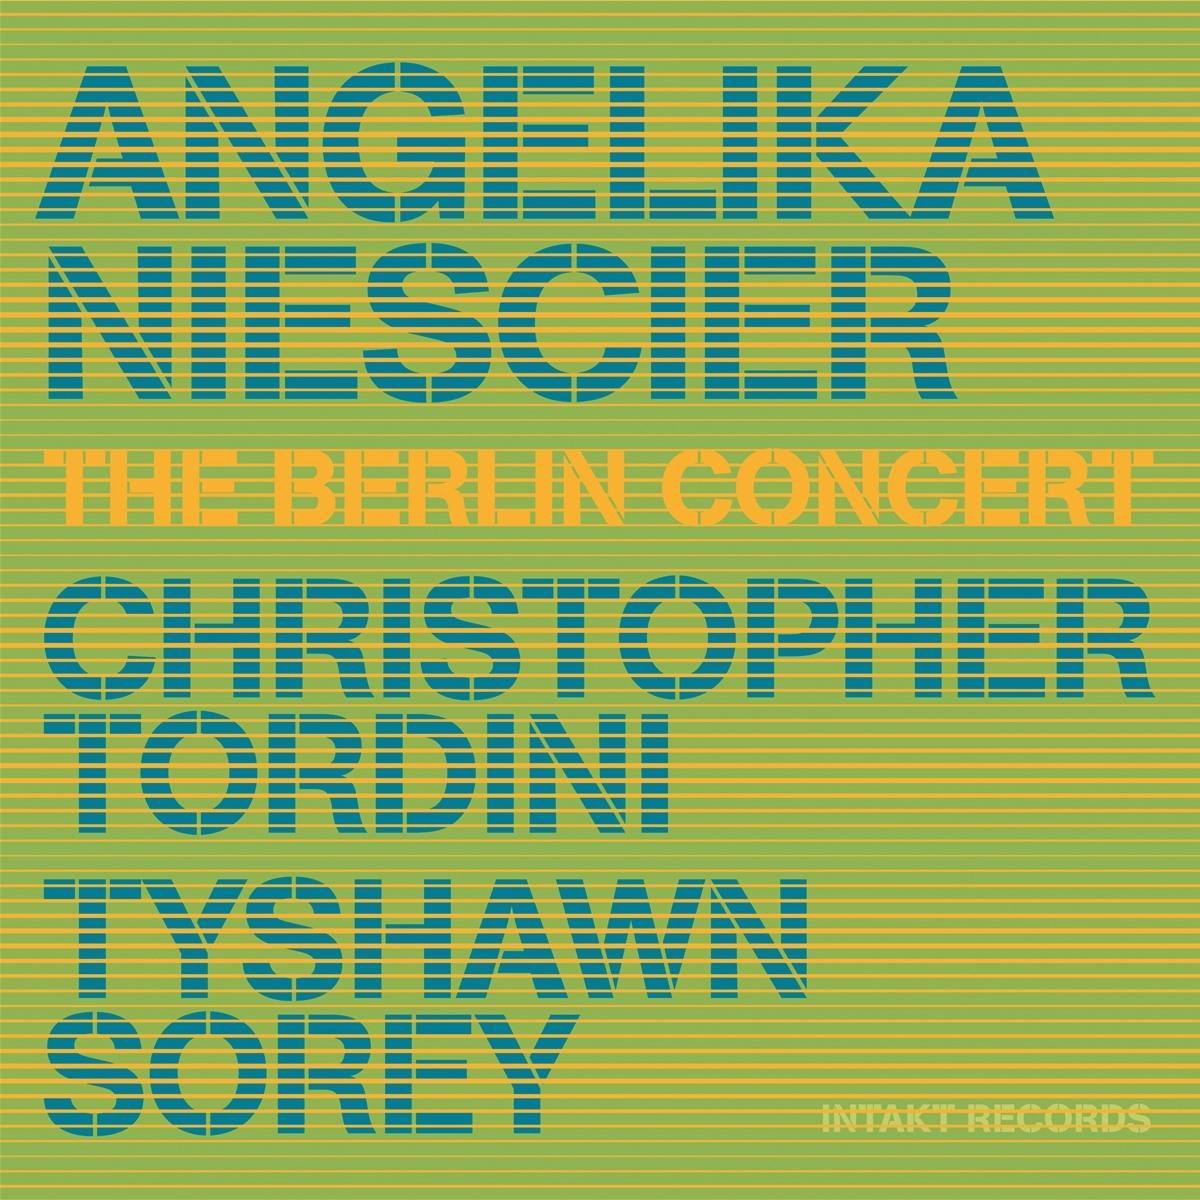 Niescier/Tordini/Sorey: The Berlin Concert